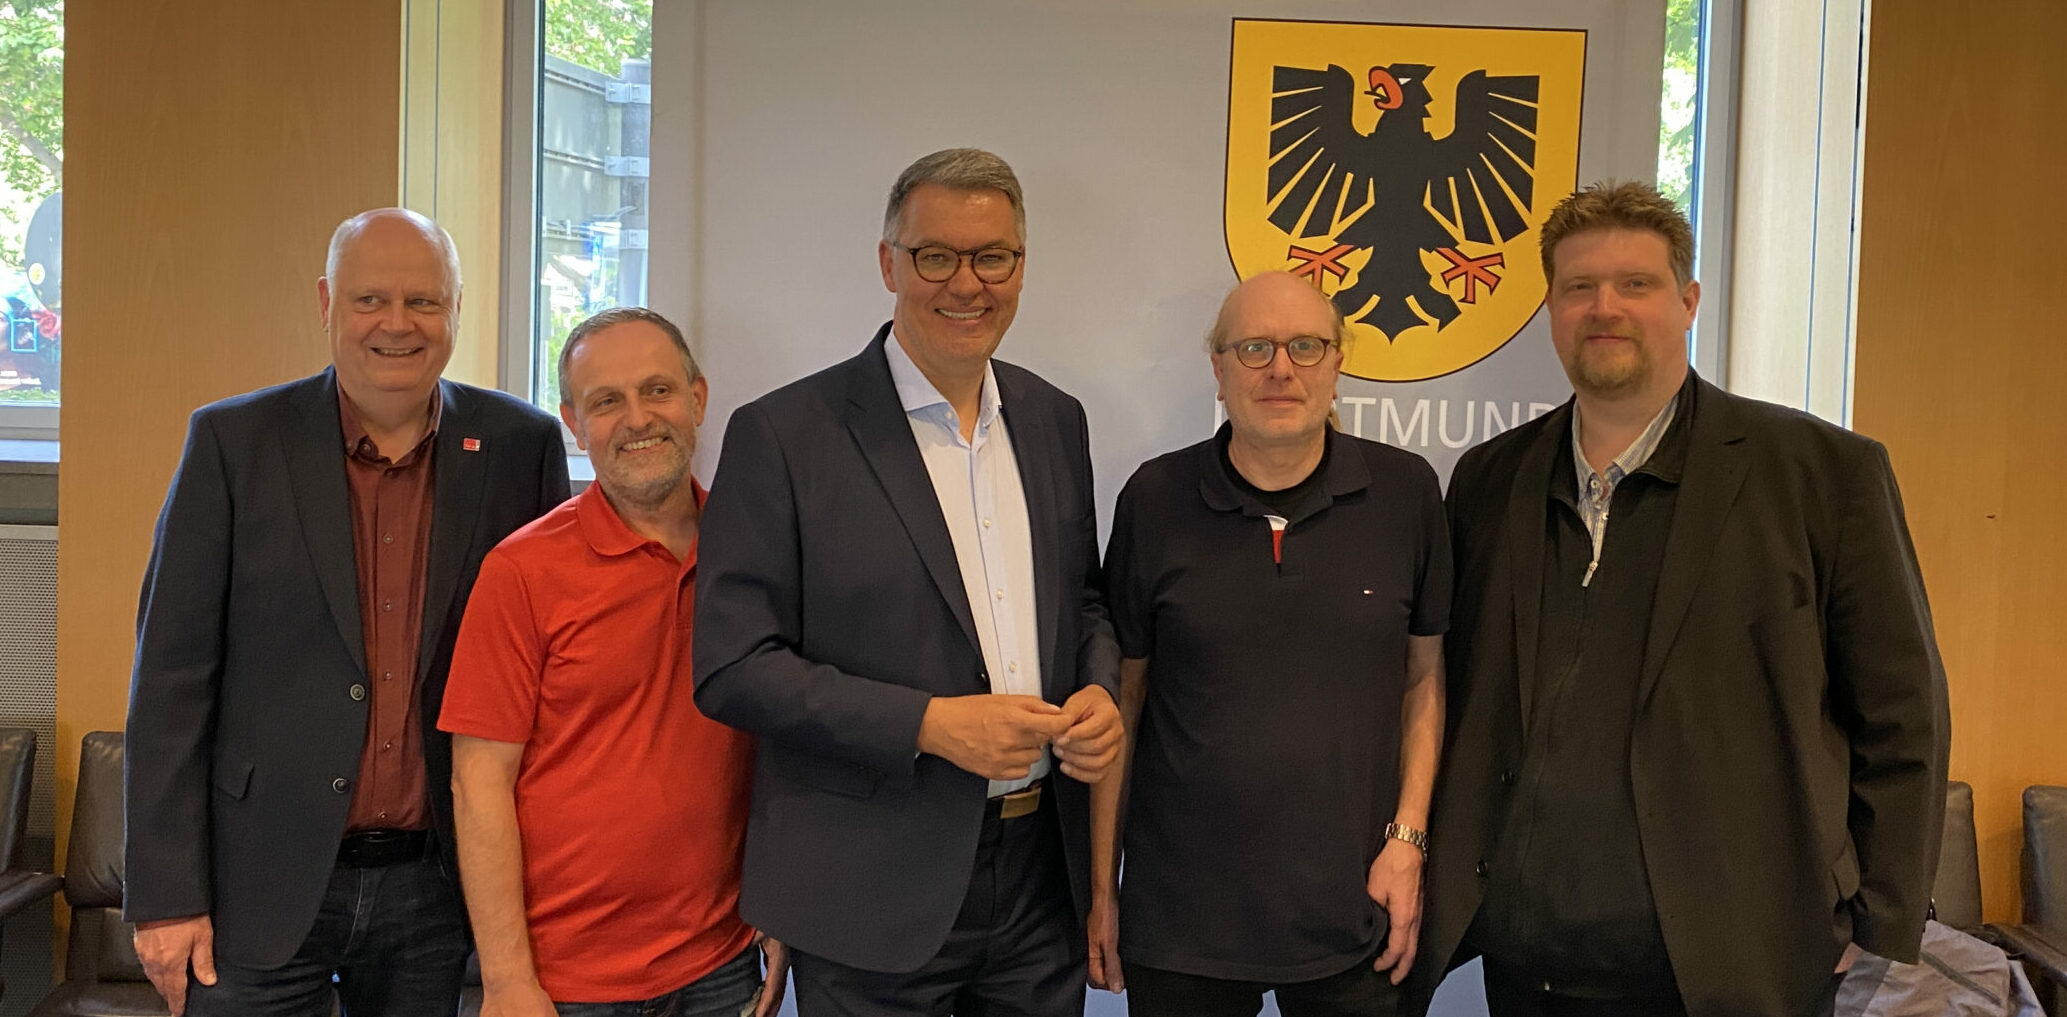 Karstadt Dortmund nun doch gerettet – OB Westphal: Geschäftsführung muss zukunftsfähiges Konzept entwickeln